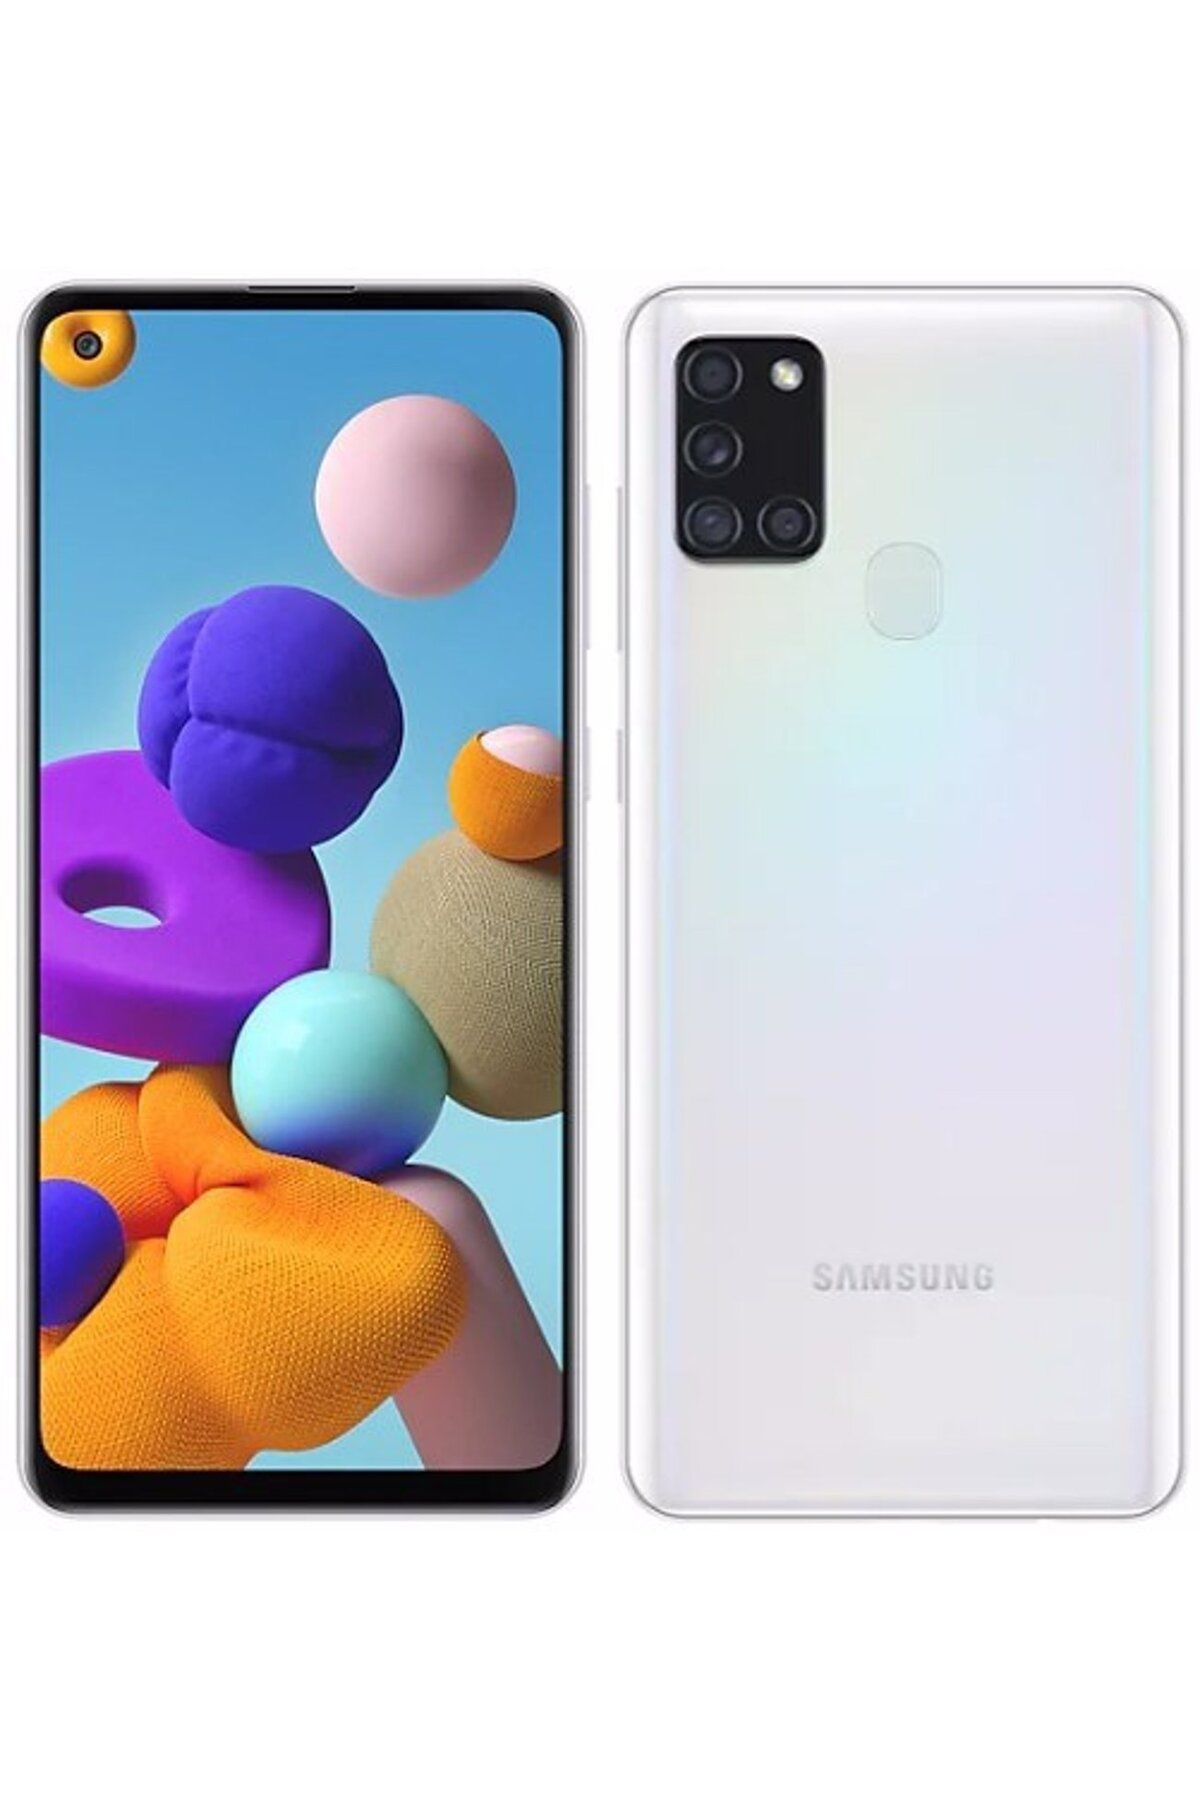 Samsung Yenilenmiş Samsung Galaxy A21S 64GB Beyaz B Kalite